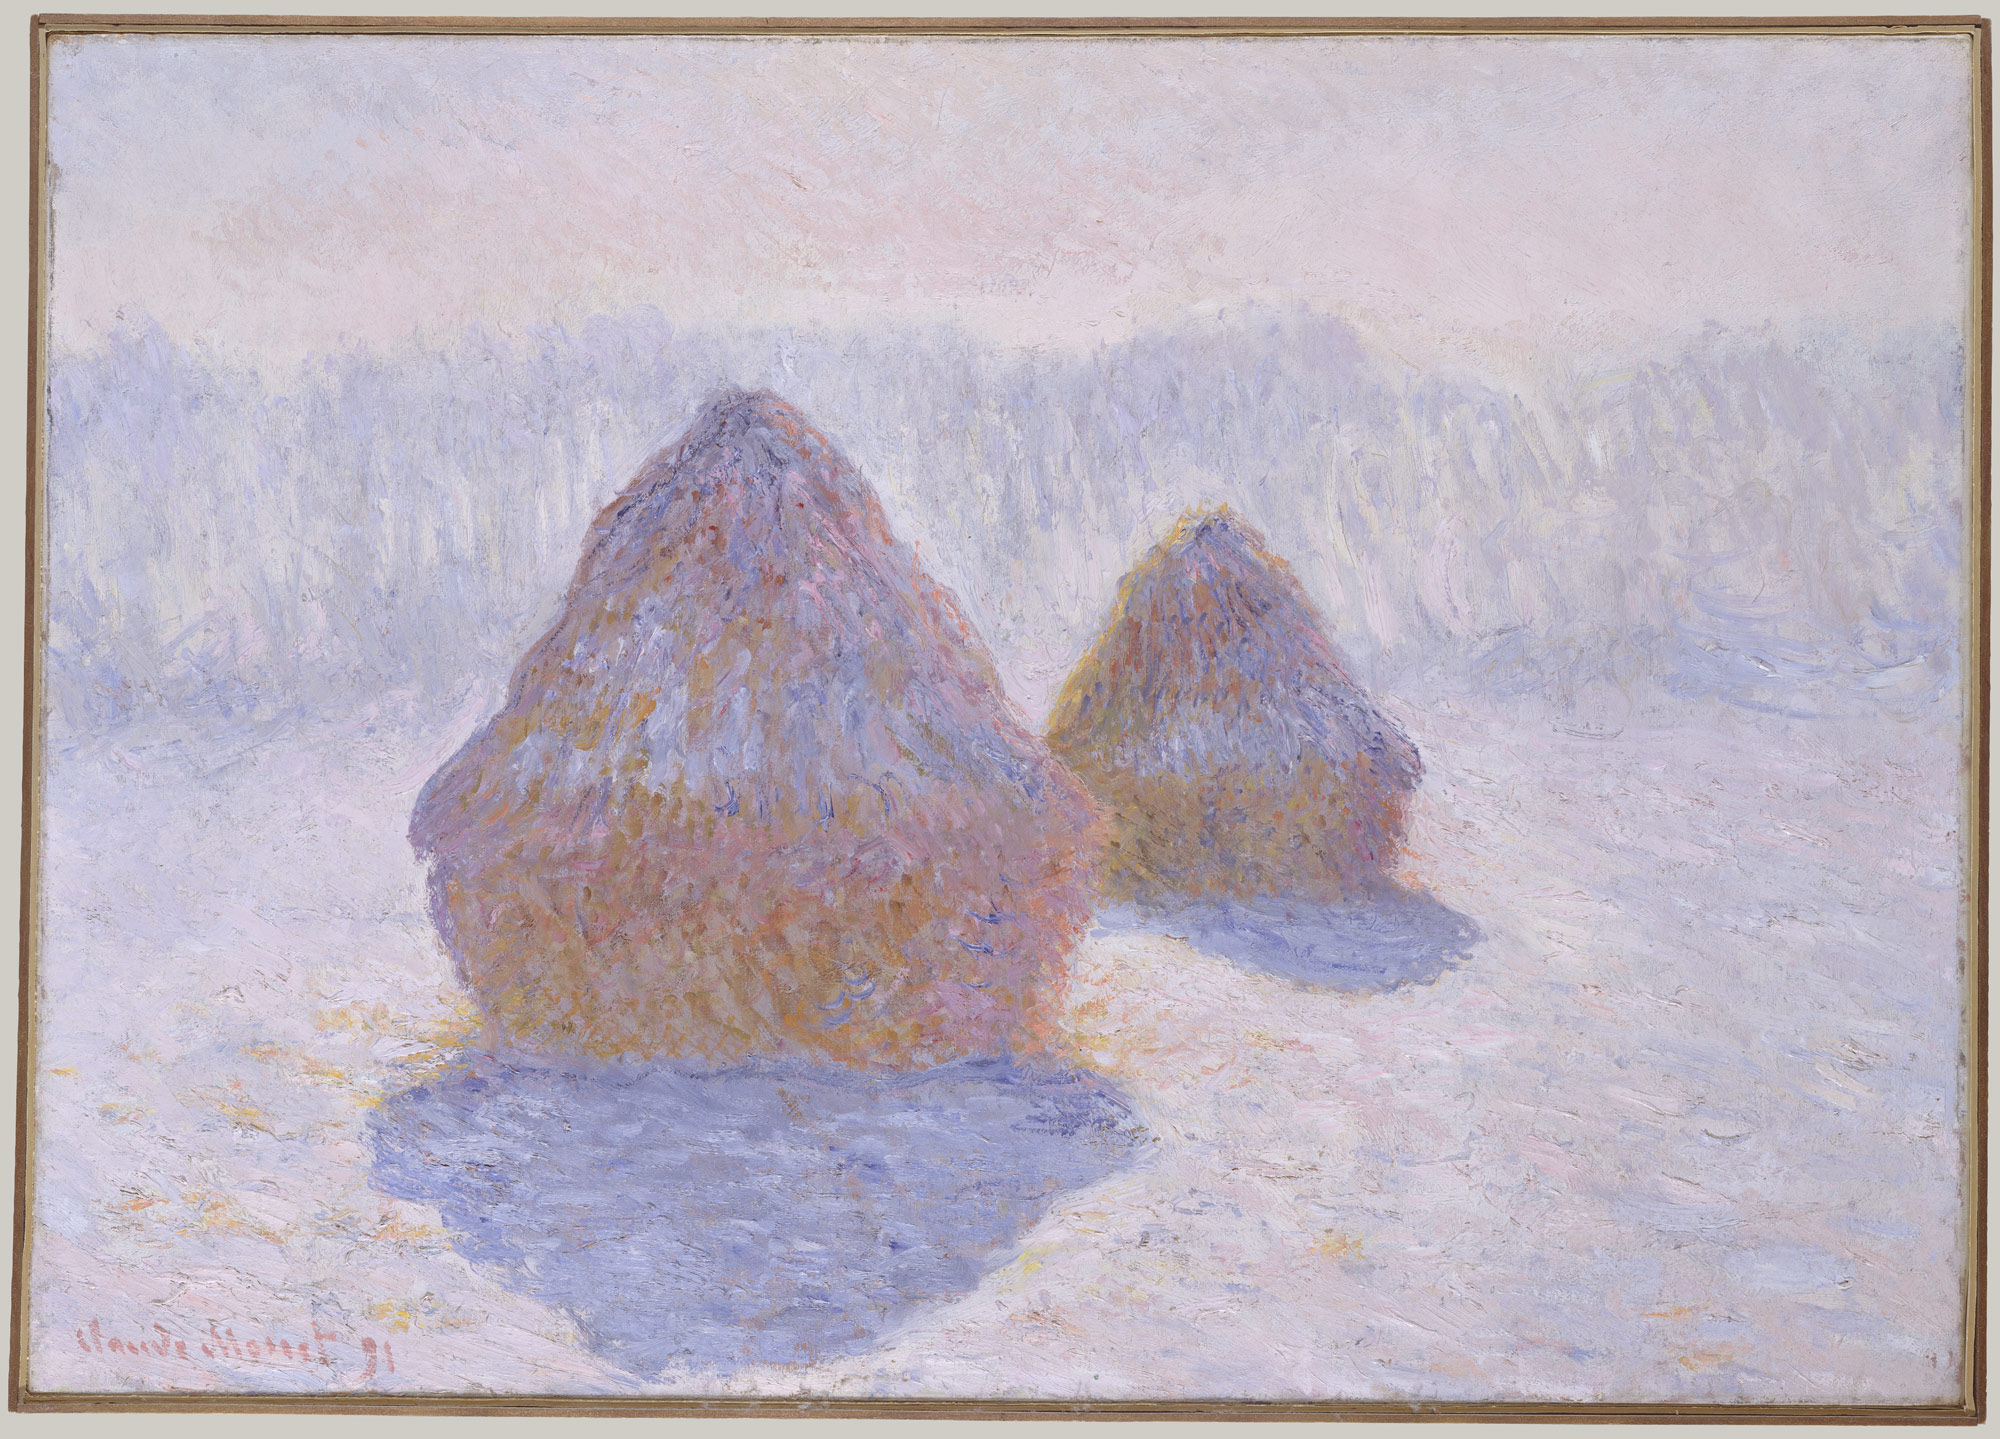 乾草堆（在雪景和陽光的作用下） by Claude Monet - 1891 - 65.4 x 92.1 cm 